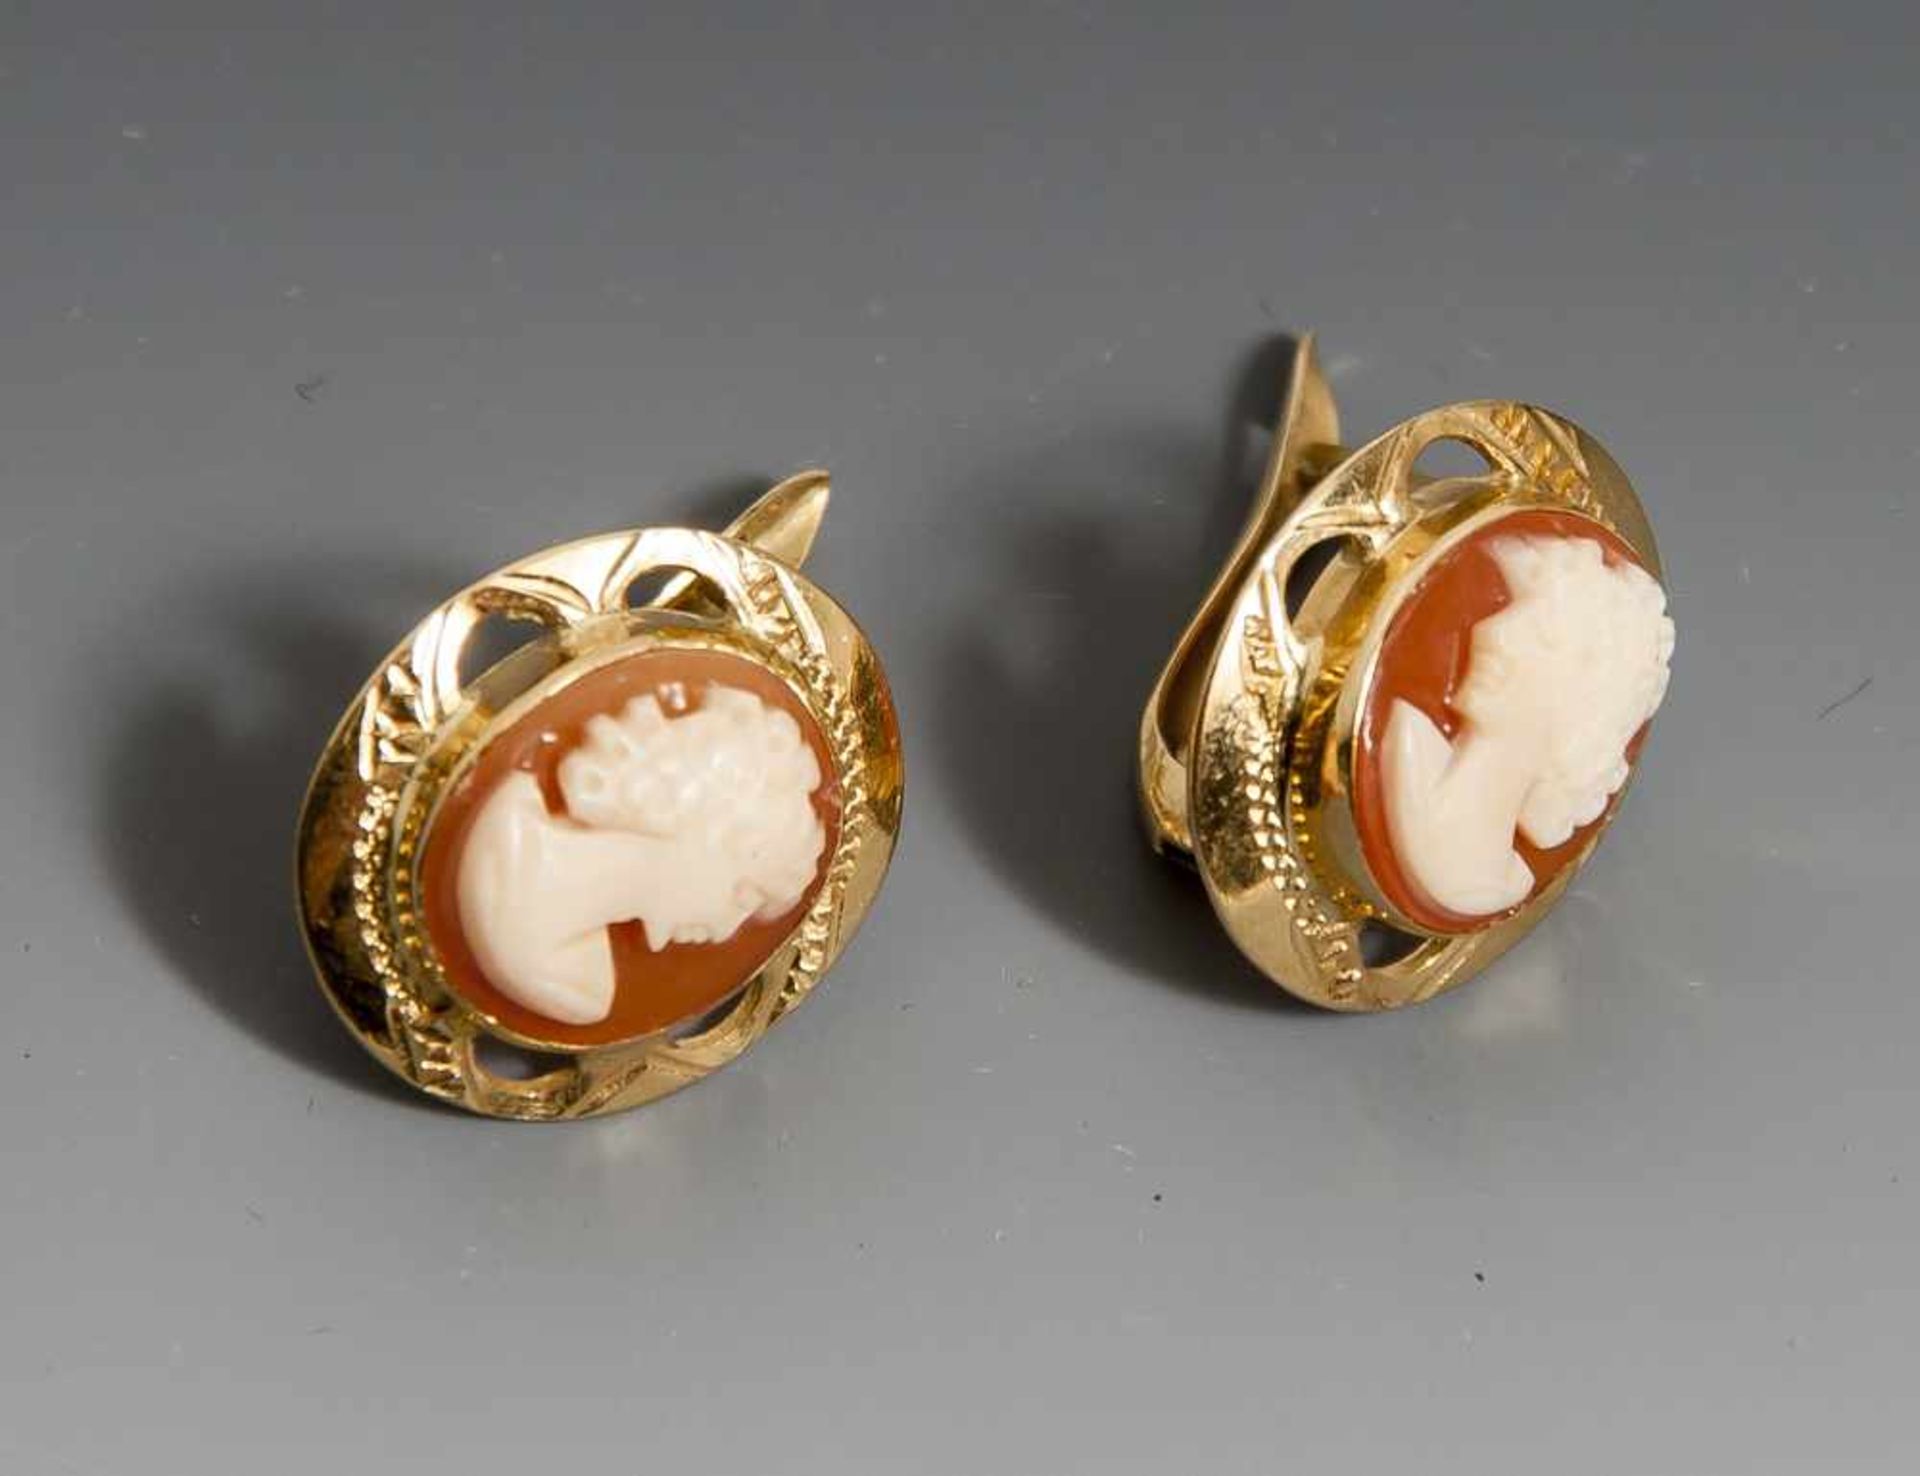 Paar Ohrgehänge mit Kameen, Gelbgold 750, ovale Muschelkameen mit Frauenbildnis im Profil.Maße Kamee